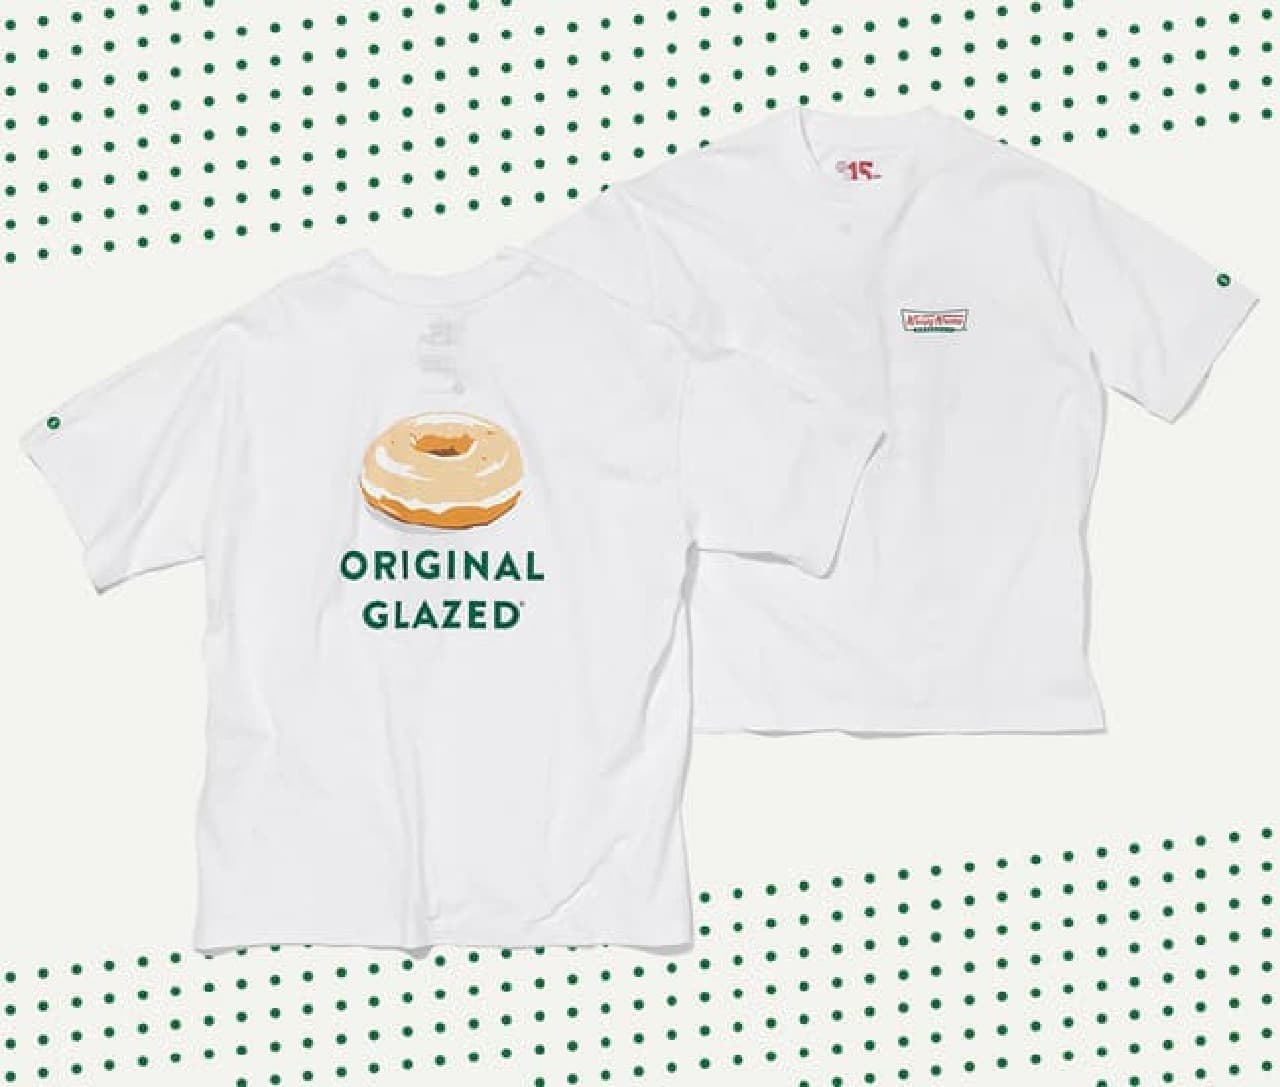 クリスピー・クリーム・ドーナツ×ユナイテッドアローズがコラボ -- KKD日本上陸15周年記念Tシャツ・キャップ・トートバッグ